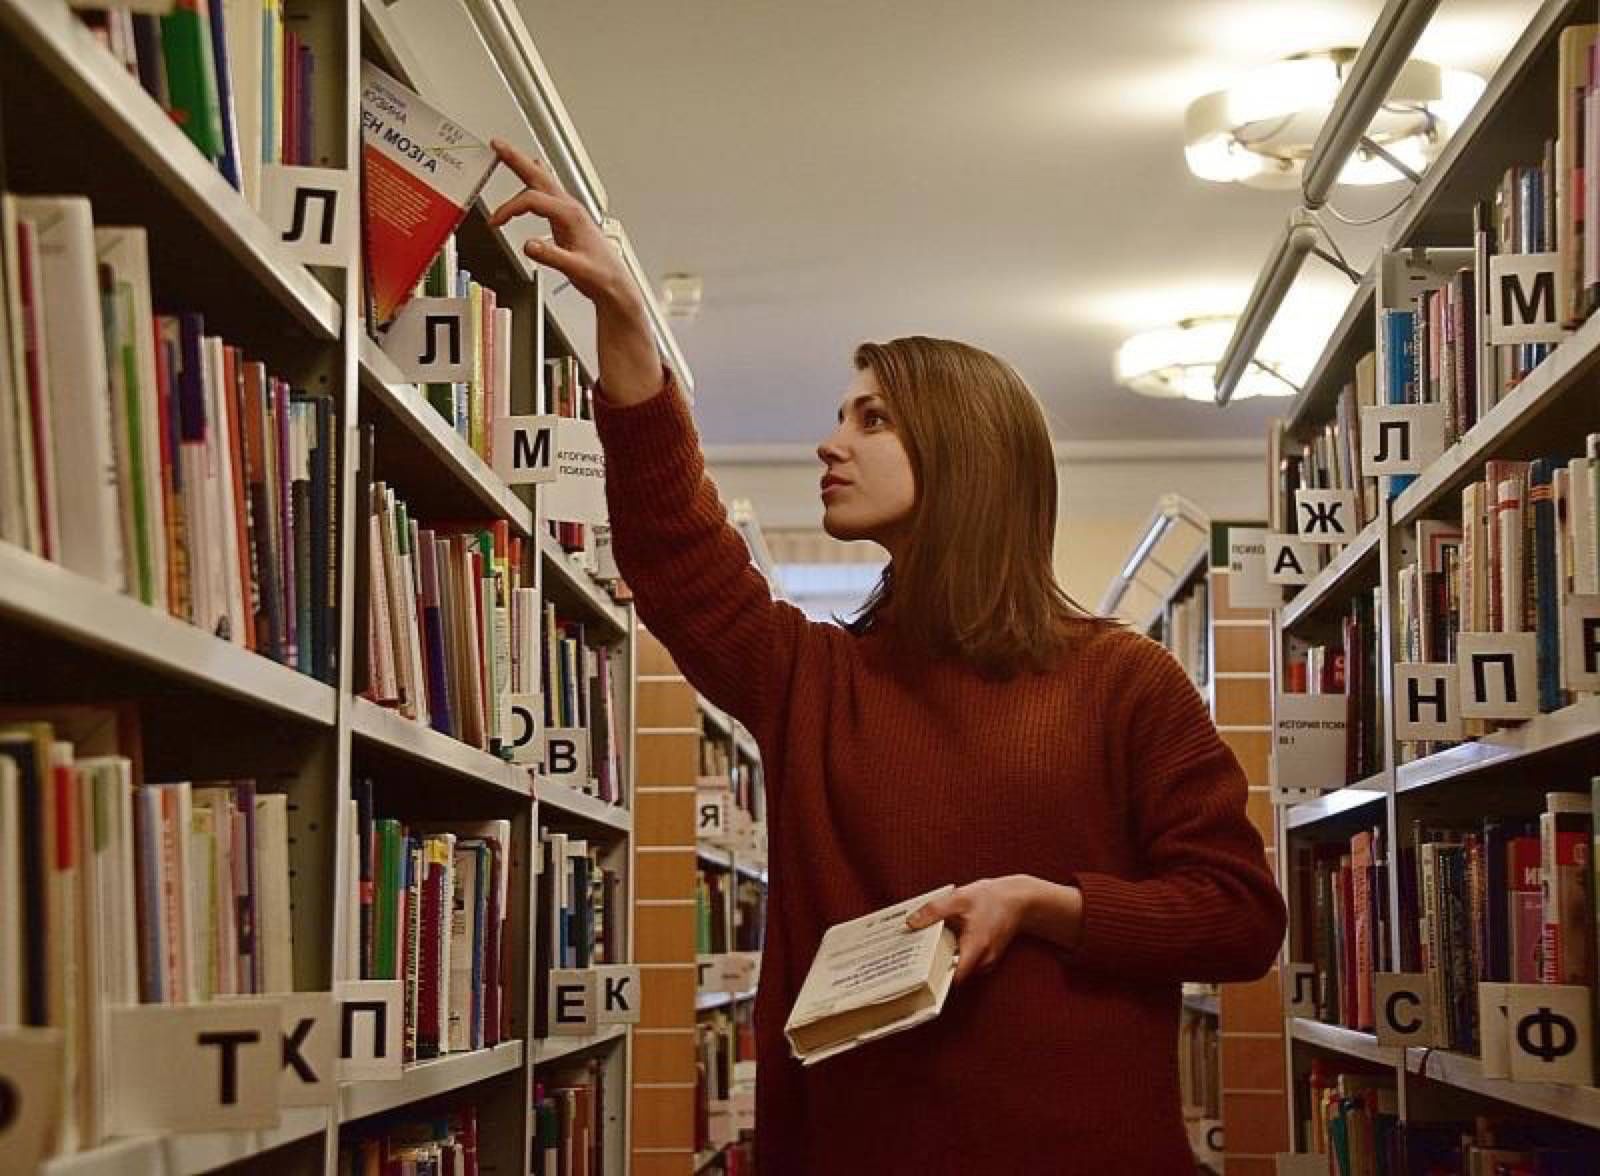 Книги найдут своего читателя. Читатели в библиотеке. Работники библиотеки.